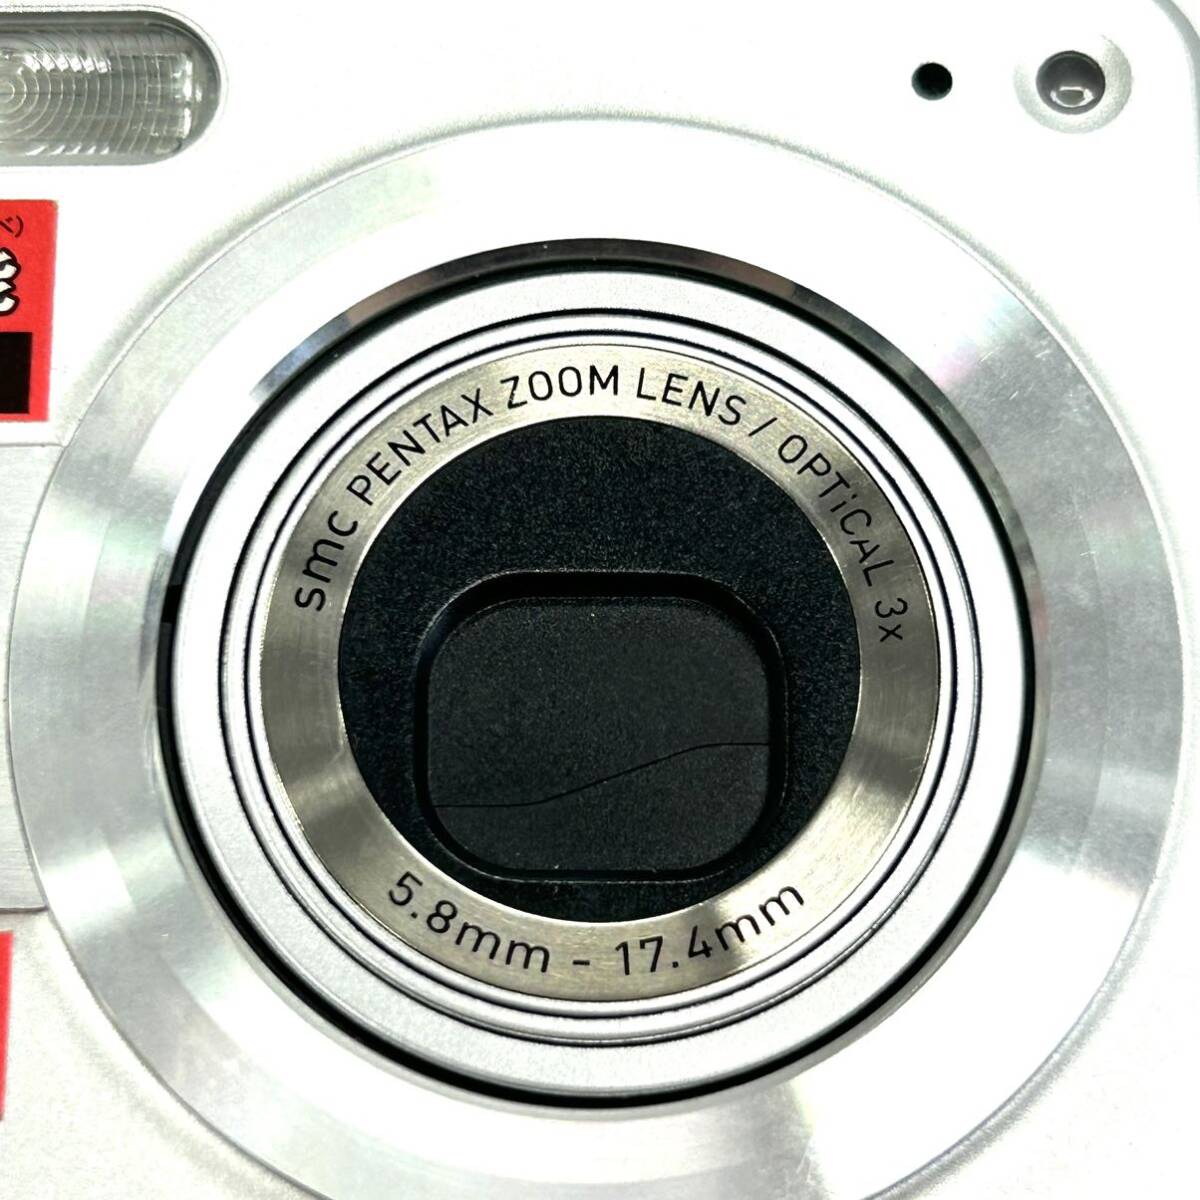 Y608 コンパクトデジタルカメラ CASIO カシオ EXILIM エクシリム EX-Z7 5.8mm-17.4mm 5.0MEGA PIXELS ジャンク品 中古 訳あり_画像7